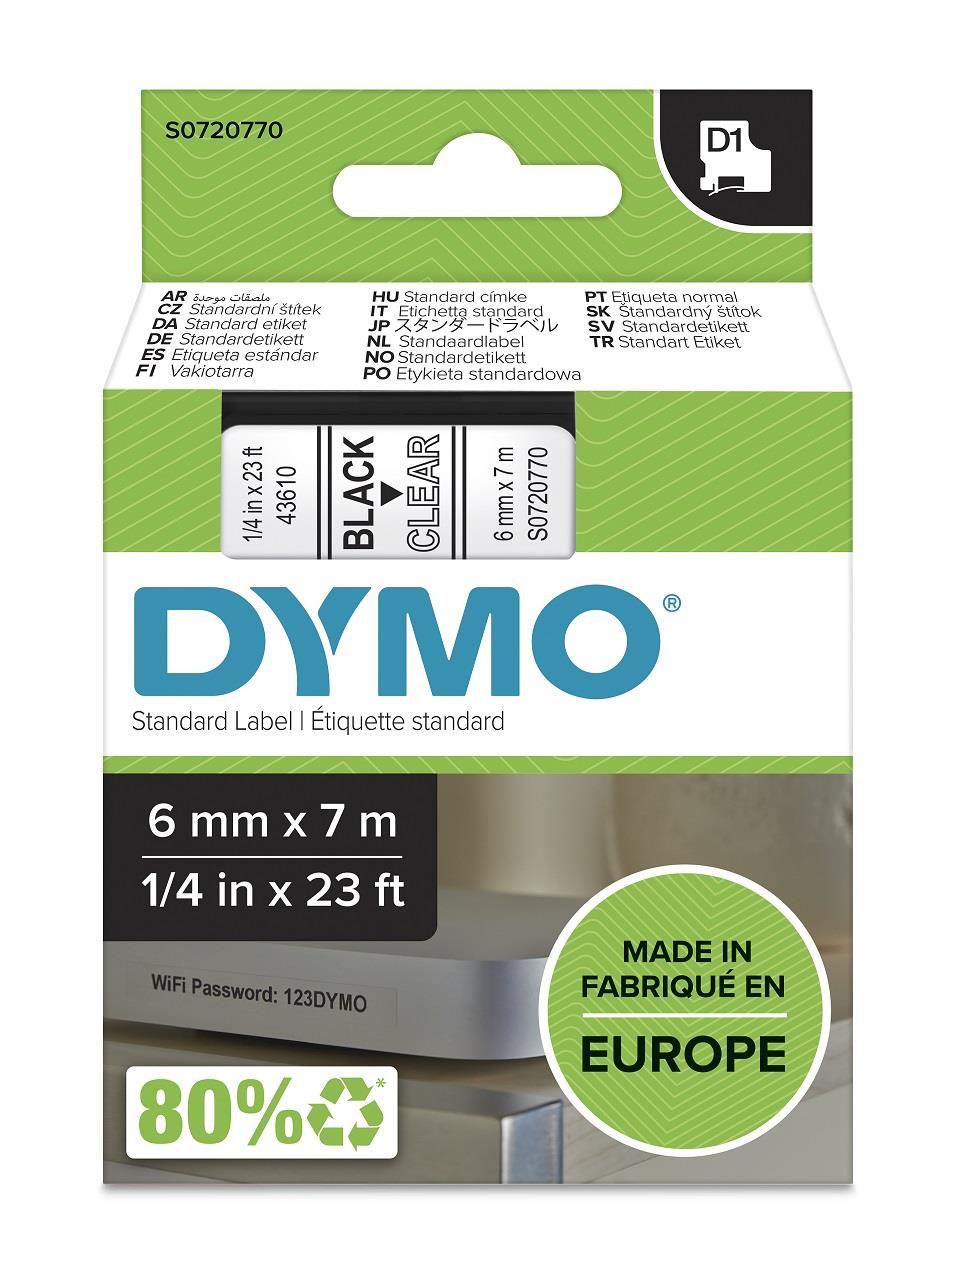 DYMO páska D1 6mm x 7m, černá na průhledné, 43610, S0720770